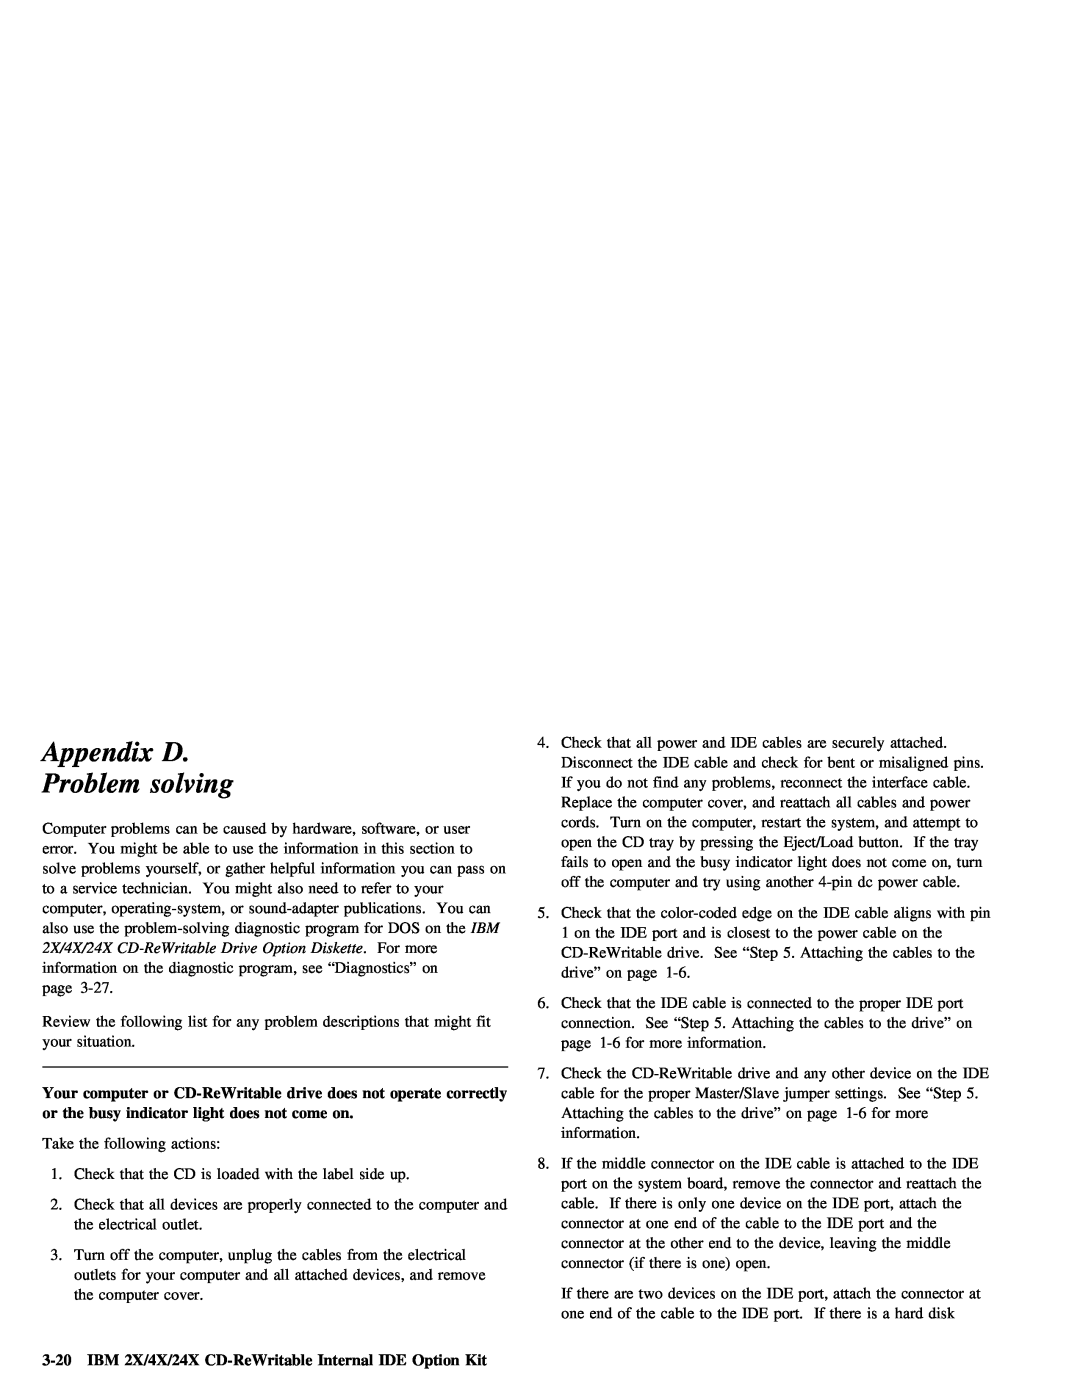 IBM 28L2234 manual solving, Appendix D, Problem 